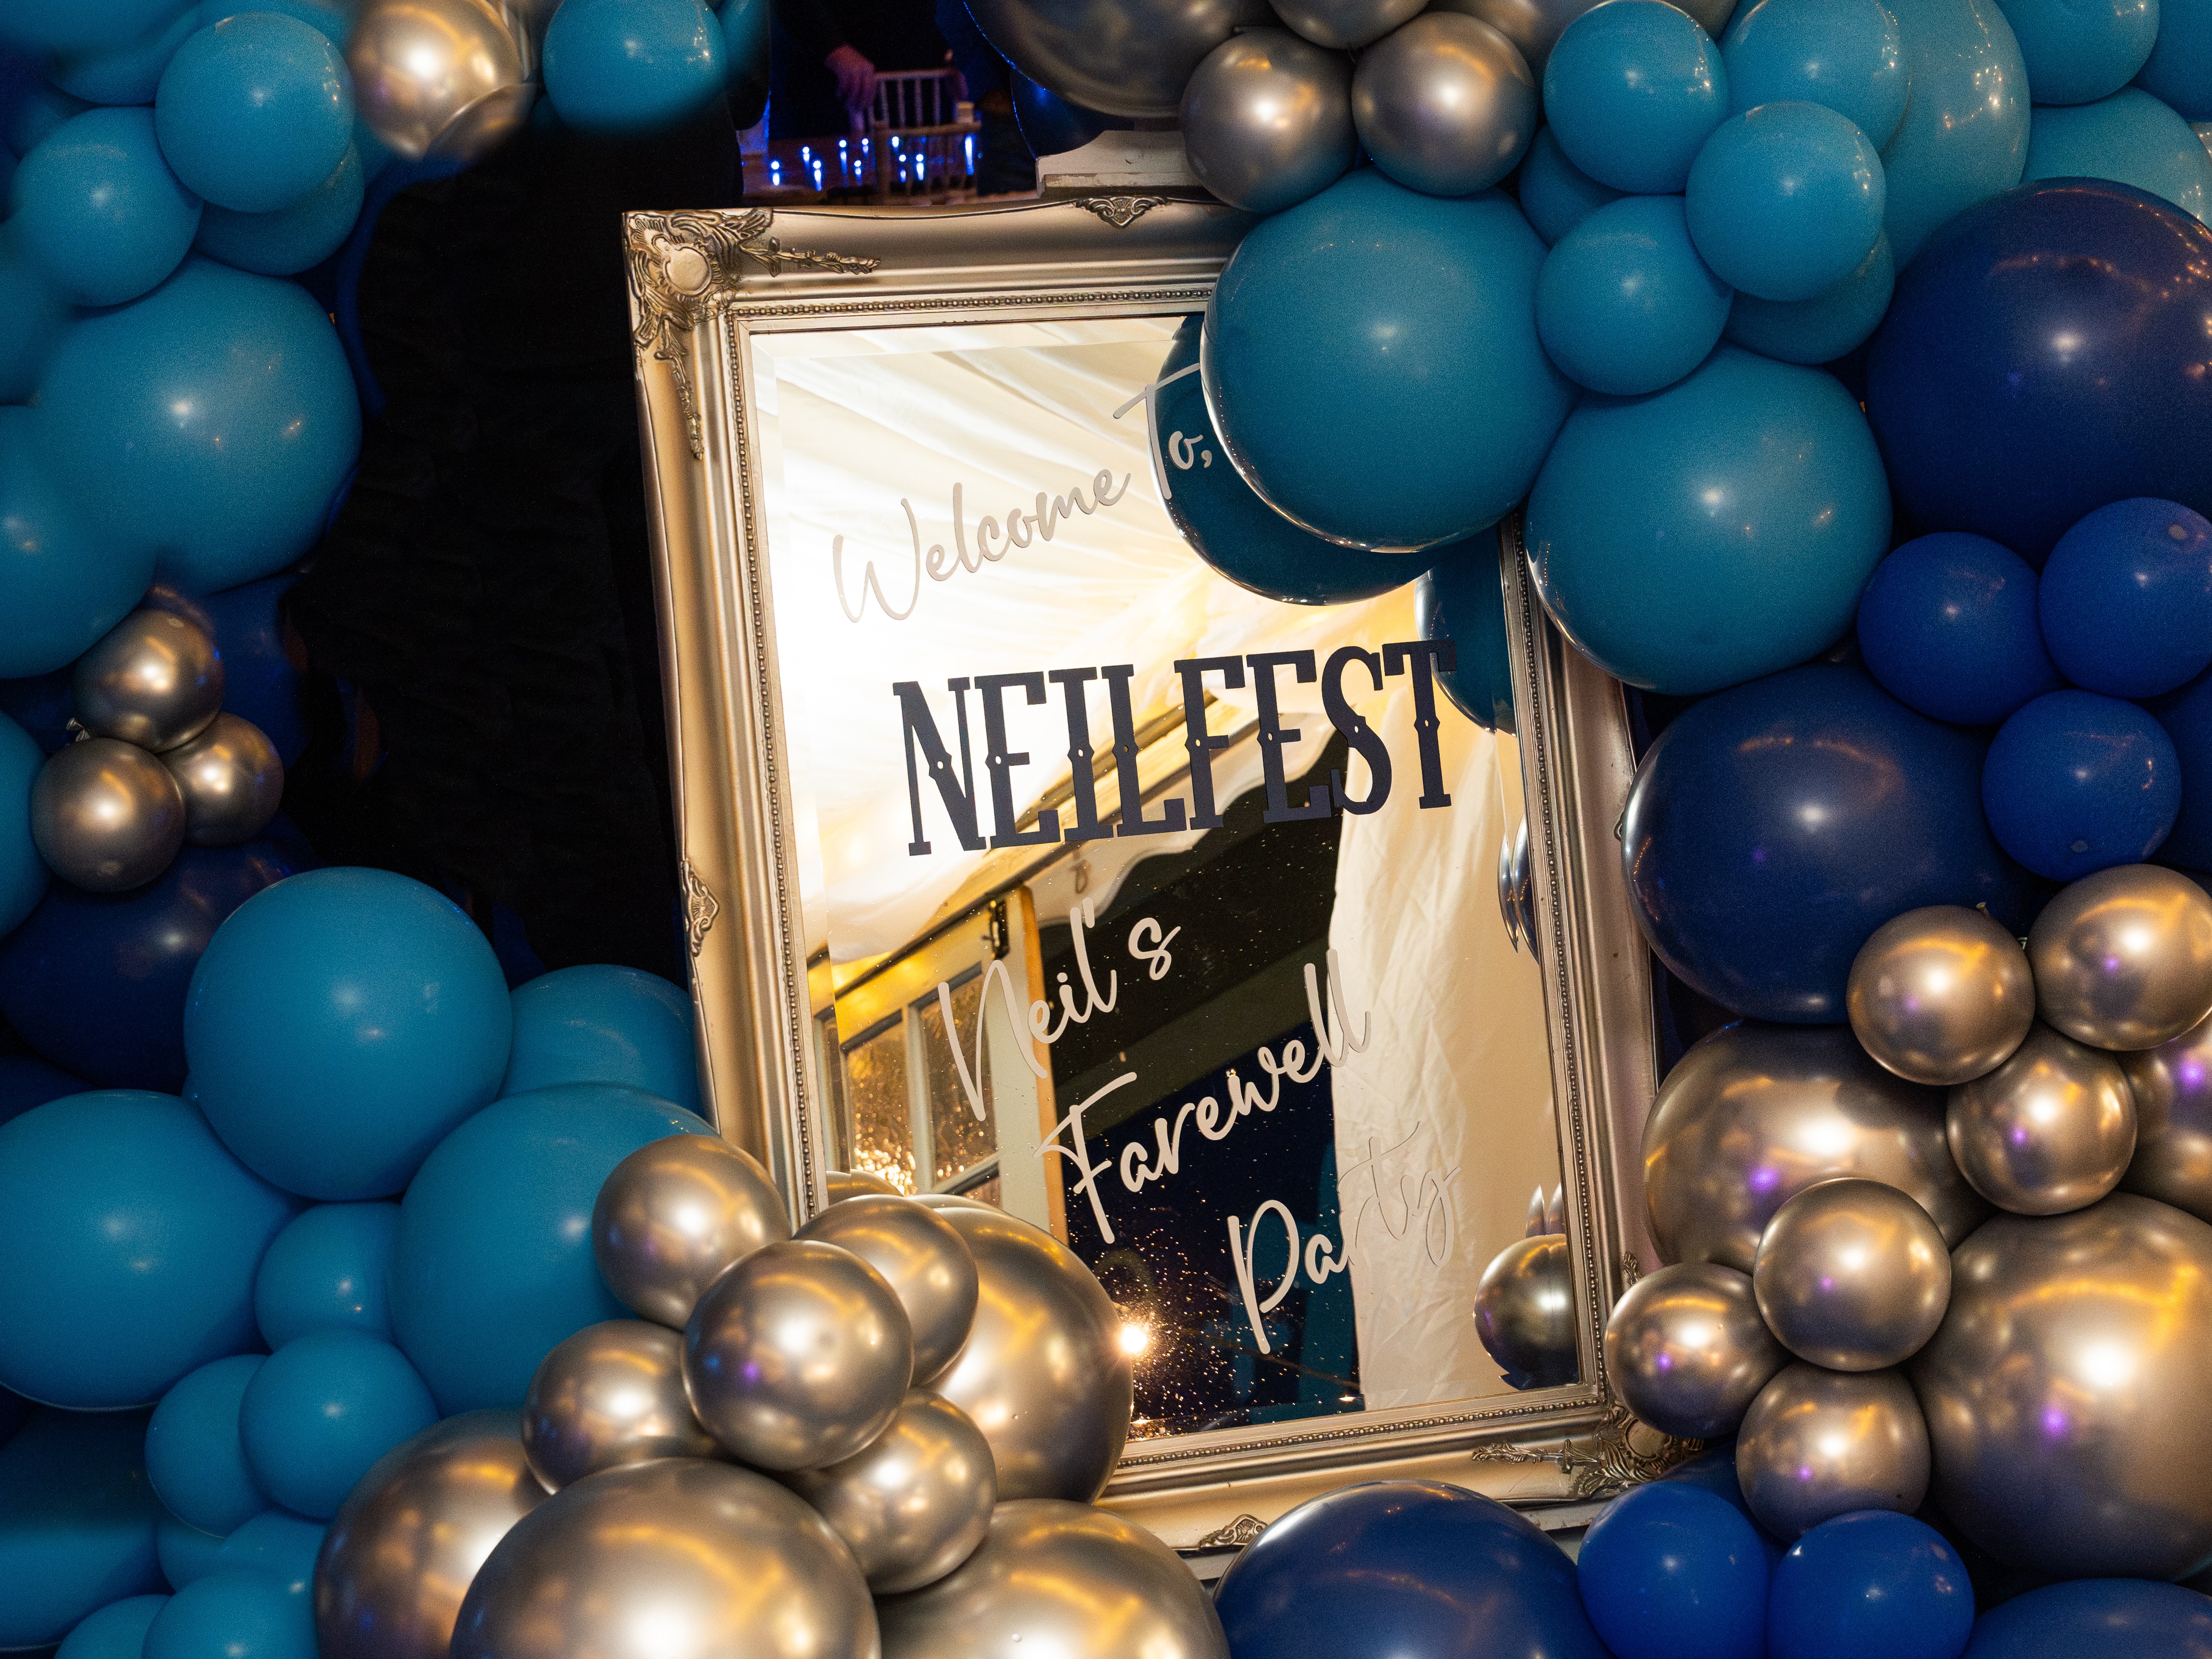 Neilfest mirror